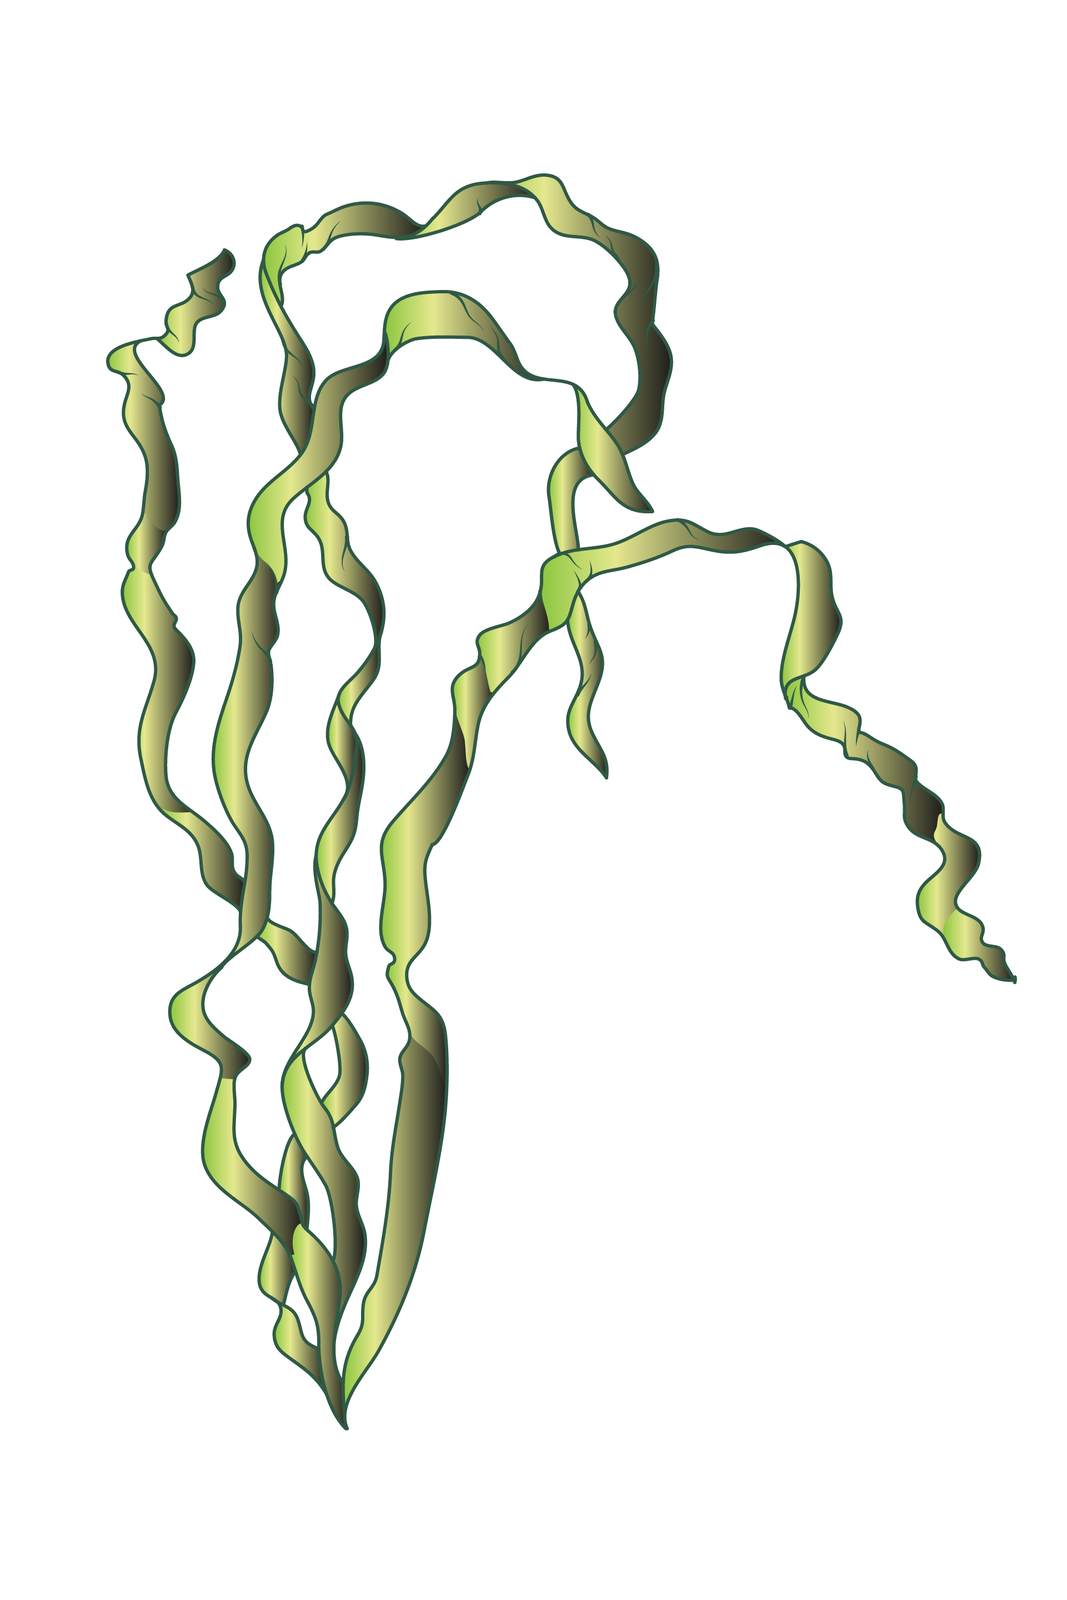 Ilustracja przedstawia trzy zielone, długie, skręcone wstęgi. Wyrastają z jednego miejsca u dołu. To glon z grupy zielenic.